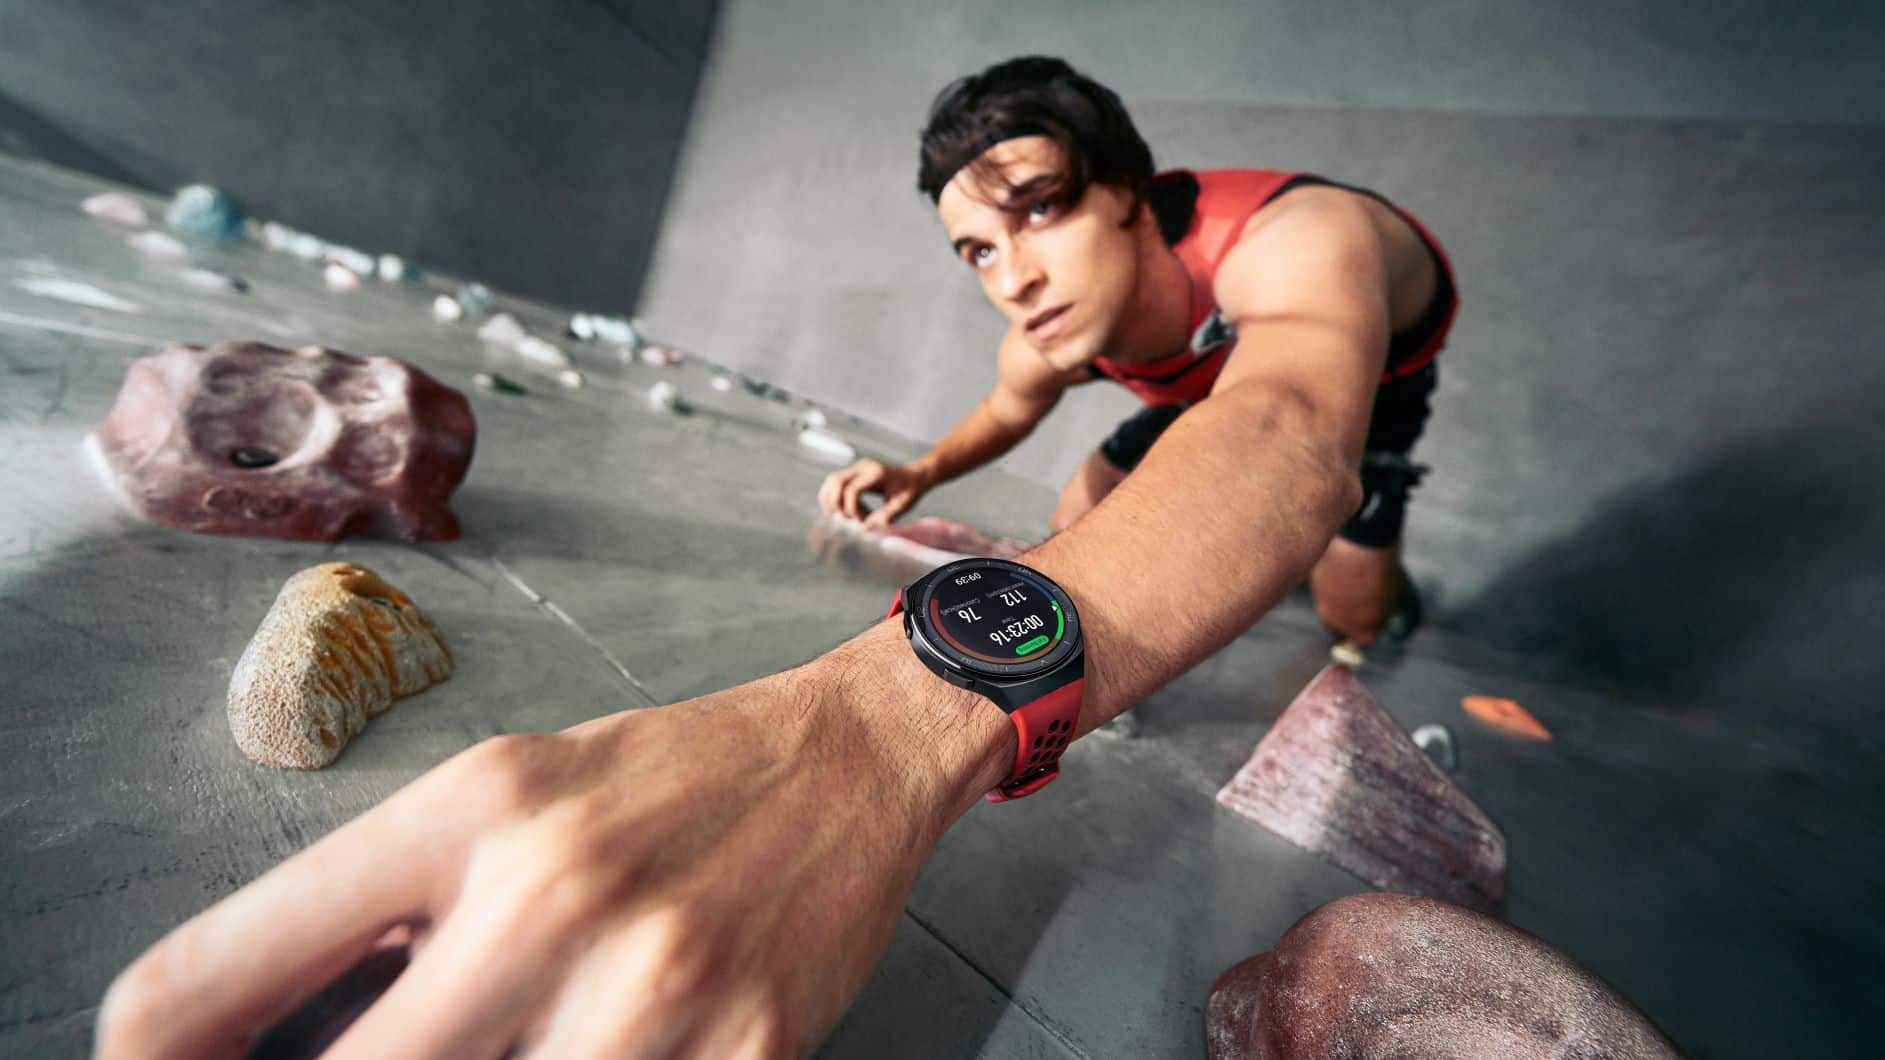 Huawei Watch GT 2e tanıtıldı: 100 egzersiz modu, gelişmiş sağlık izleme özellikleri